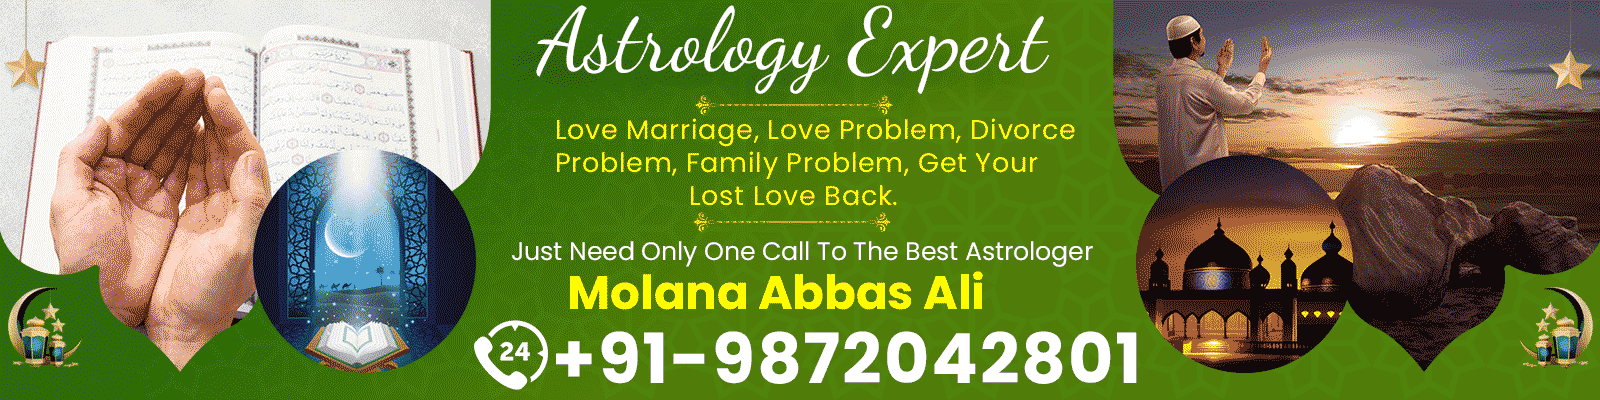 Astrologer Molana Abbas Ali +91-9872042801